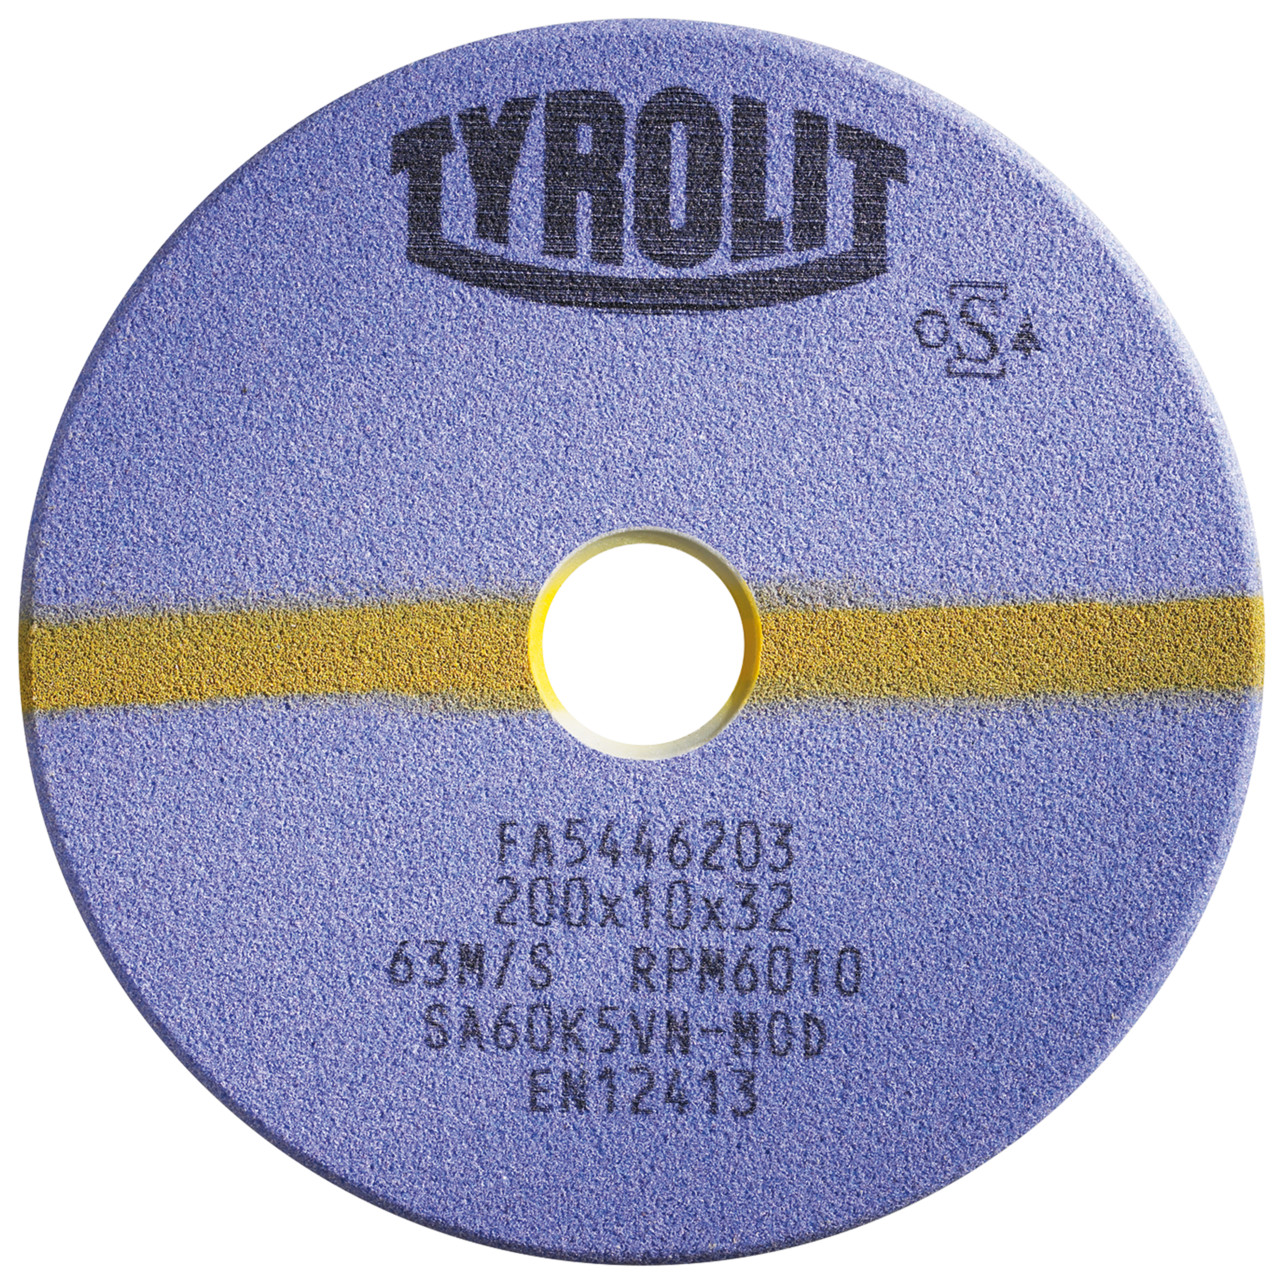 TYROLIT Schleifwerkzeuge für Sägeschärfautomaten DxTxH 200x8x32 Für Kreissägen und stellitierte Band- und Gattersägen, Form: 1C, Art. 804976